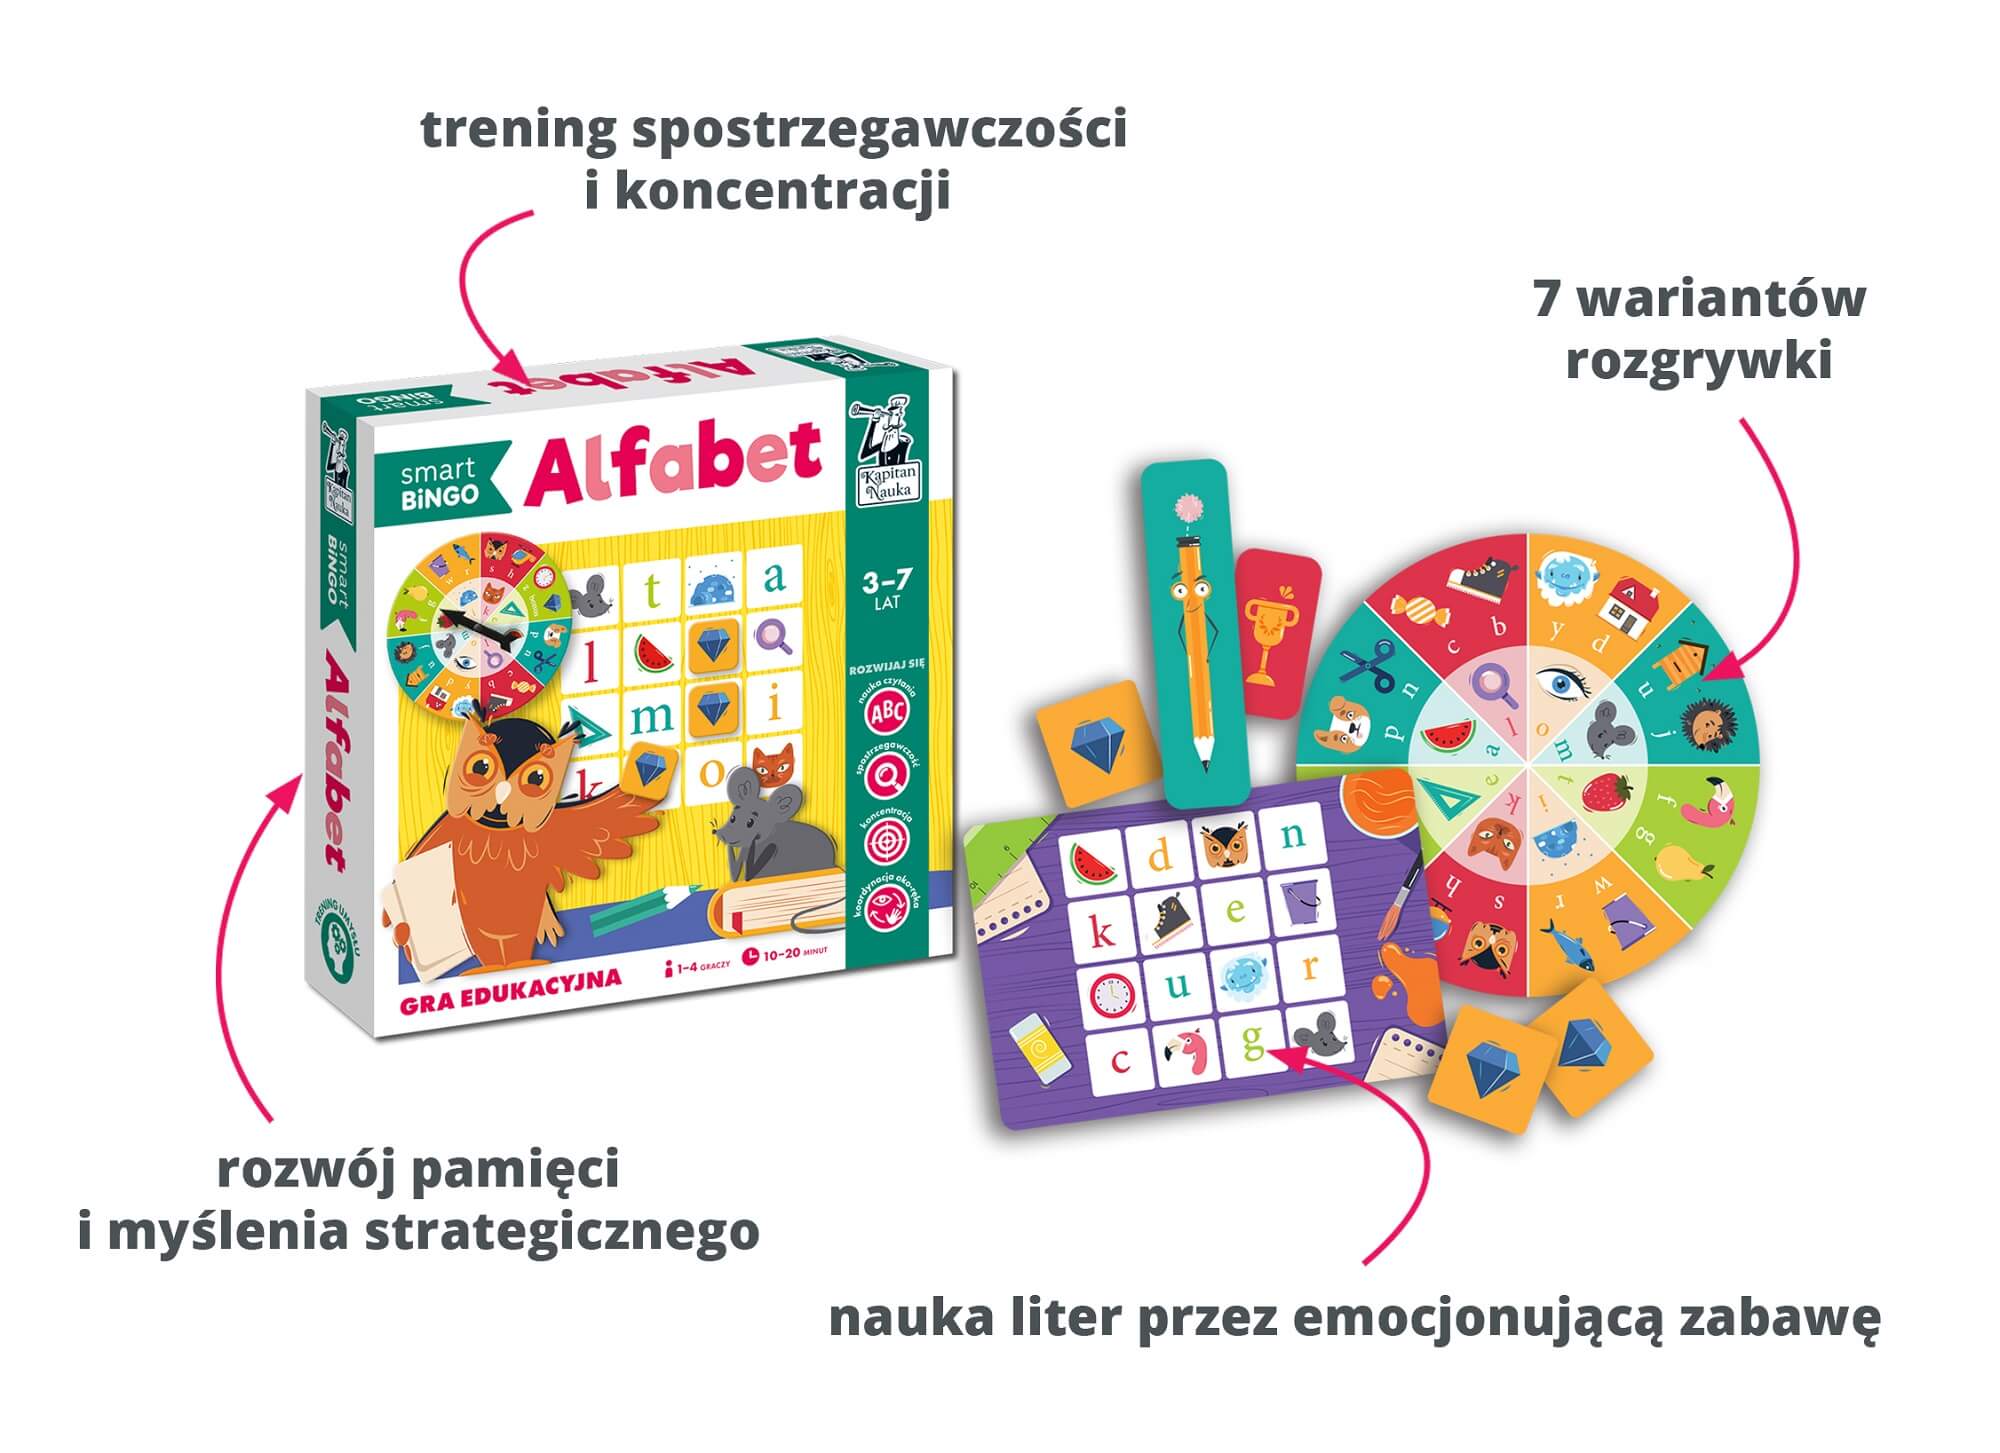 Alfabet. Smart bingo. Gra edukacyjna do nauki alfabetu